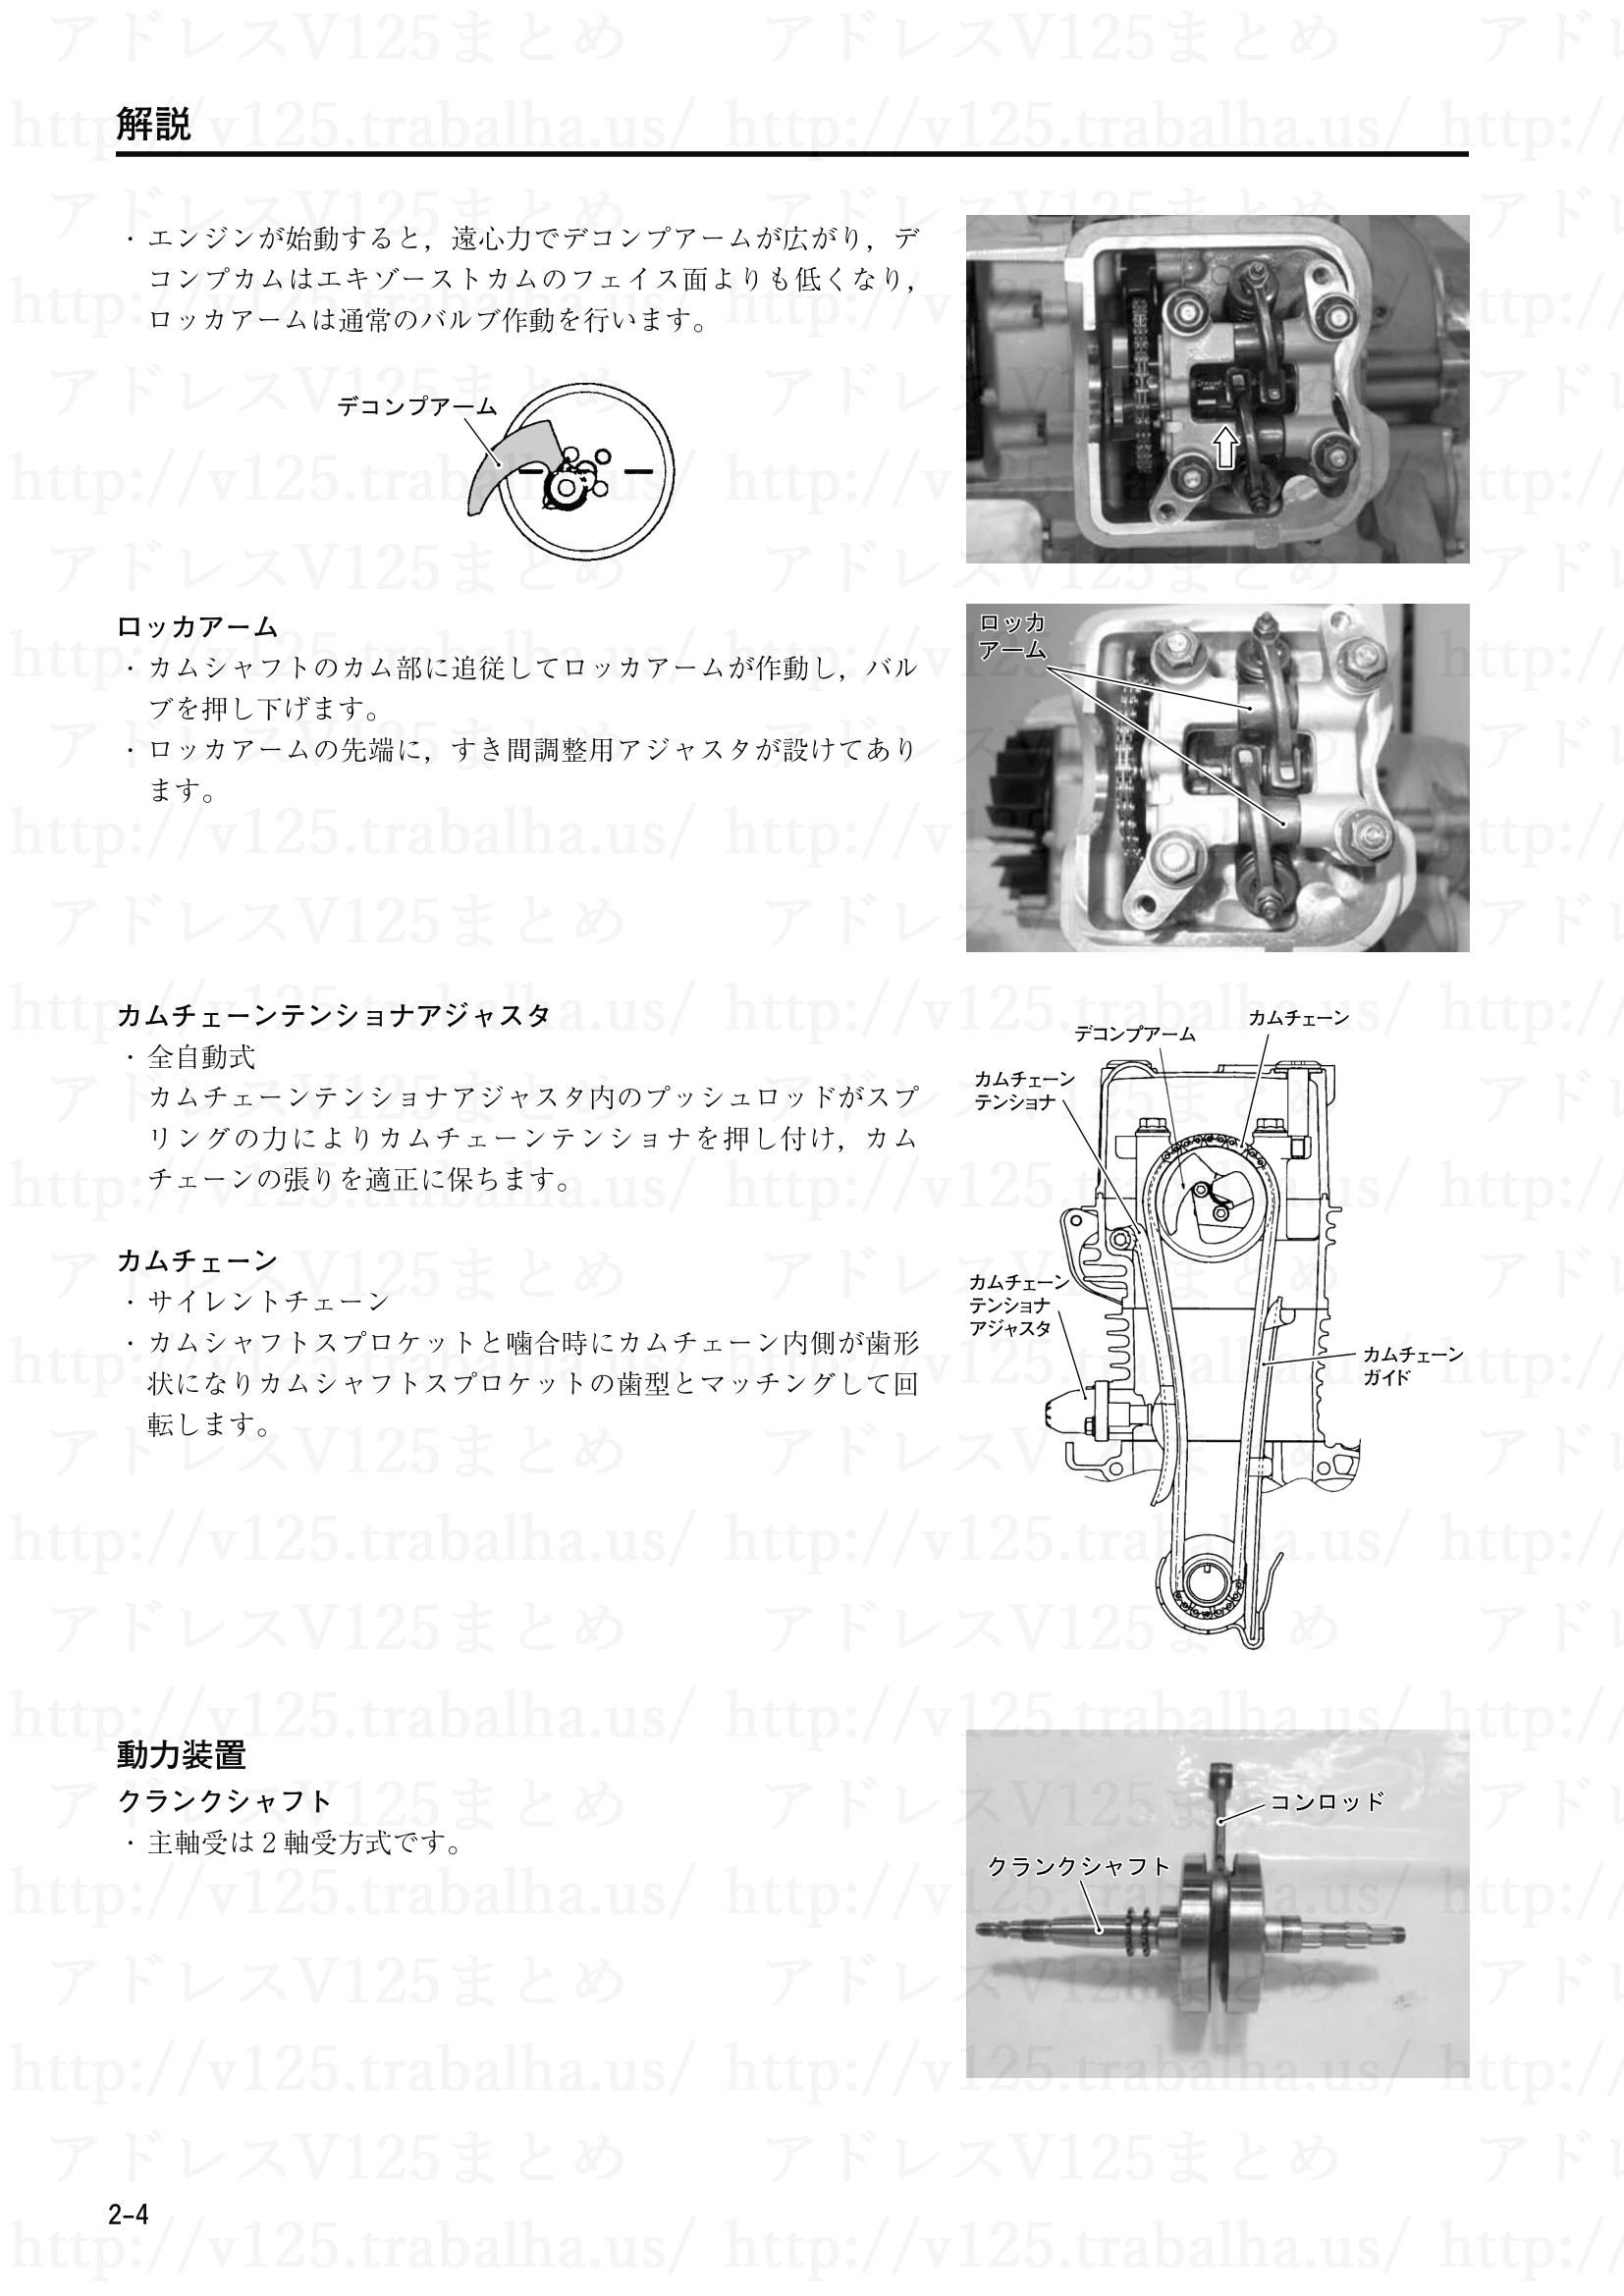 2-4【解説】動力装置